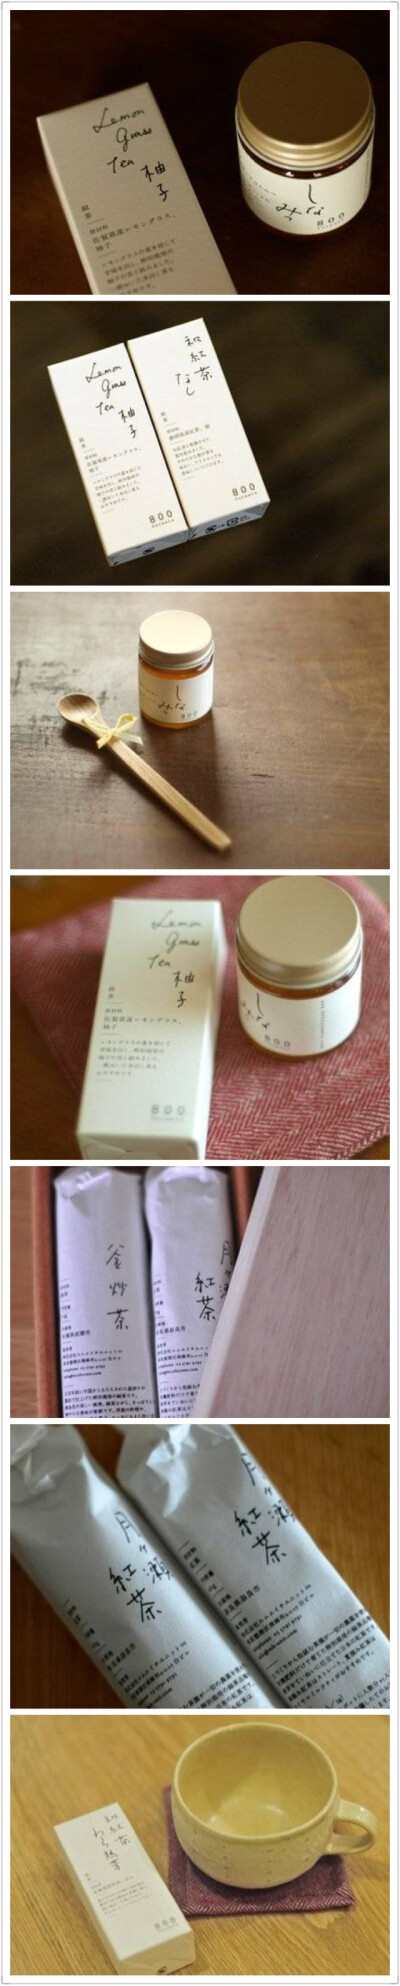 日式风格的茶叶包装设计